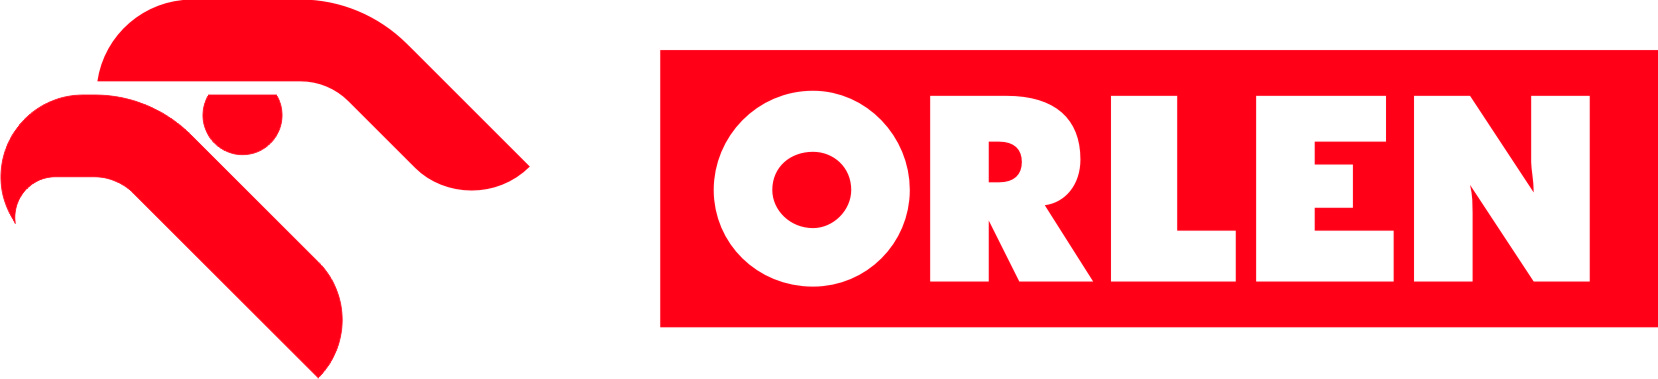 logo poziome ORLEN